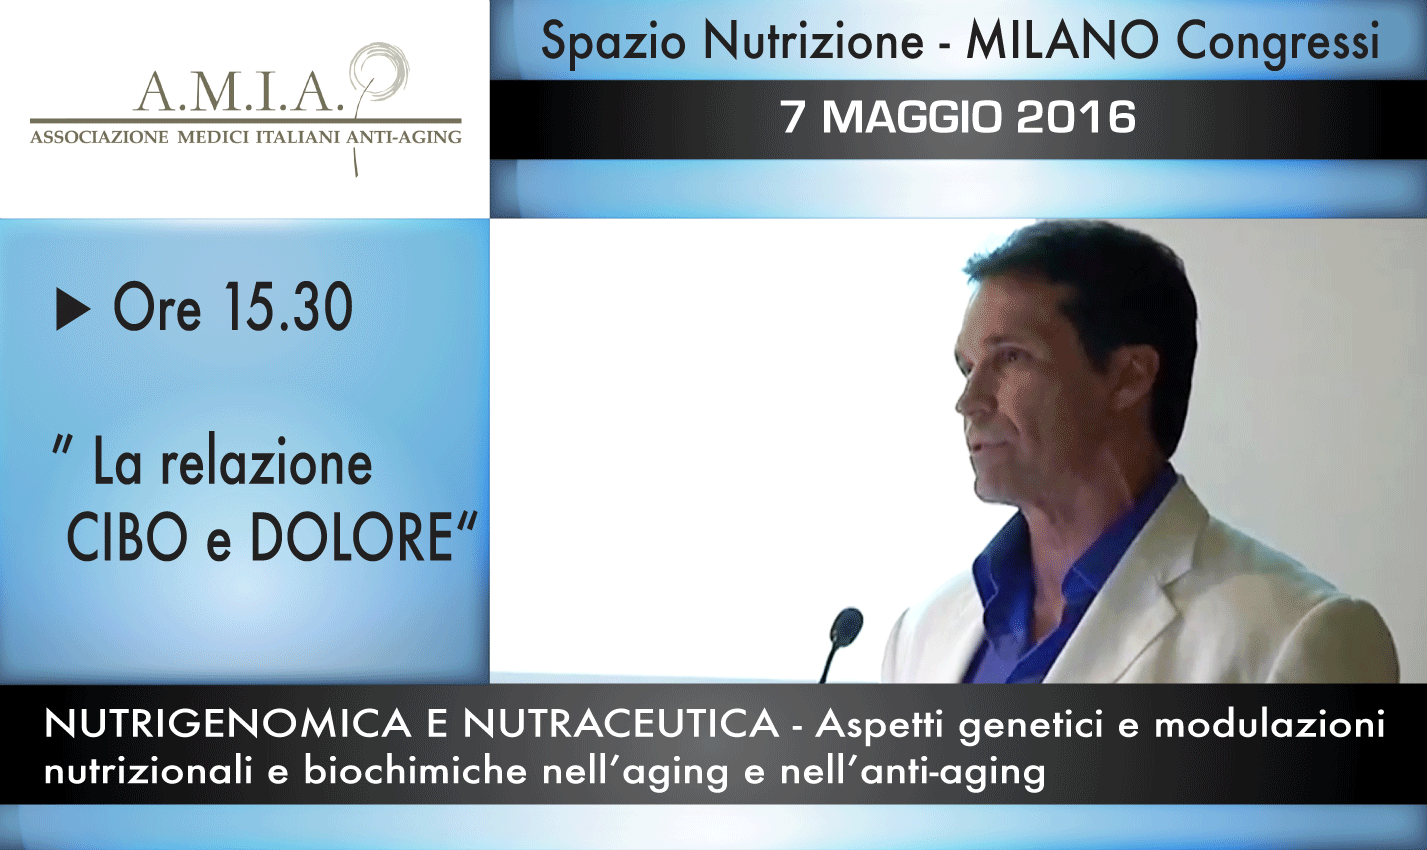 Intervento del Dr. Massimo Spattini – Congresso A.M.I.A. – 7 maggio 2016 – Spazio Nutrizione – Milano Congressi